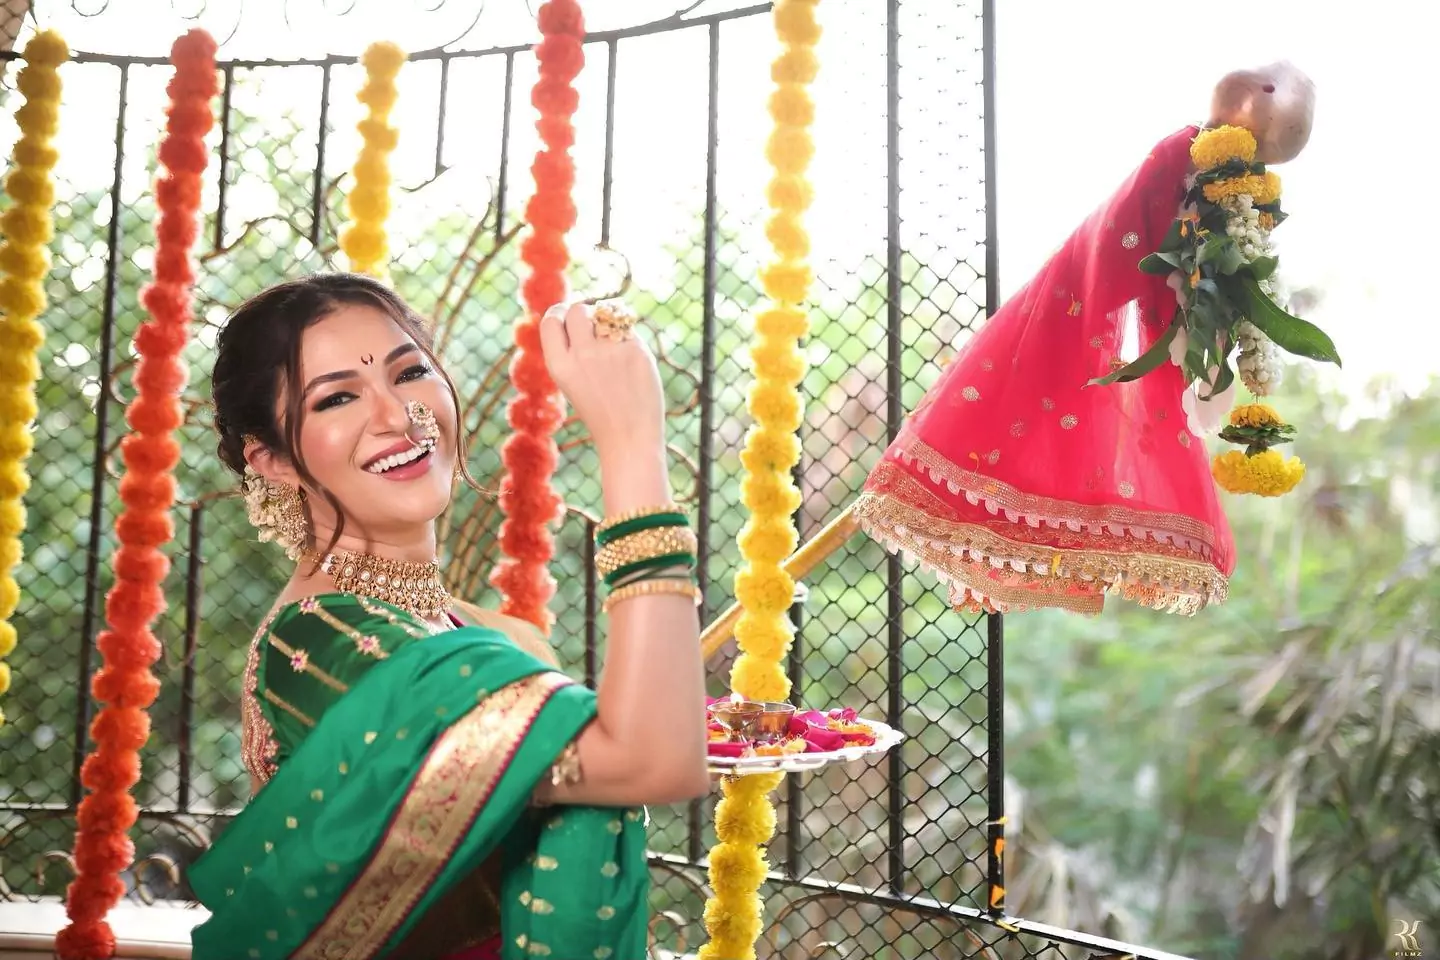 Nauvari Saree Photoshoot Ideas Kashta Saree pose for Girls Photoshoot Ideas# nauvarisaree#photoshoot - YouTube